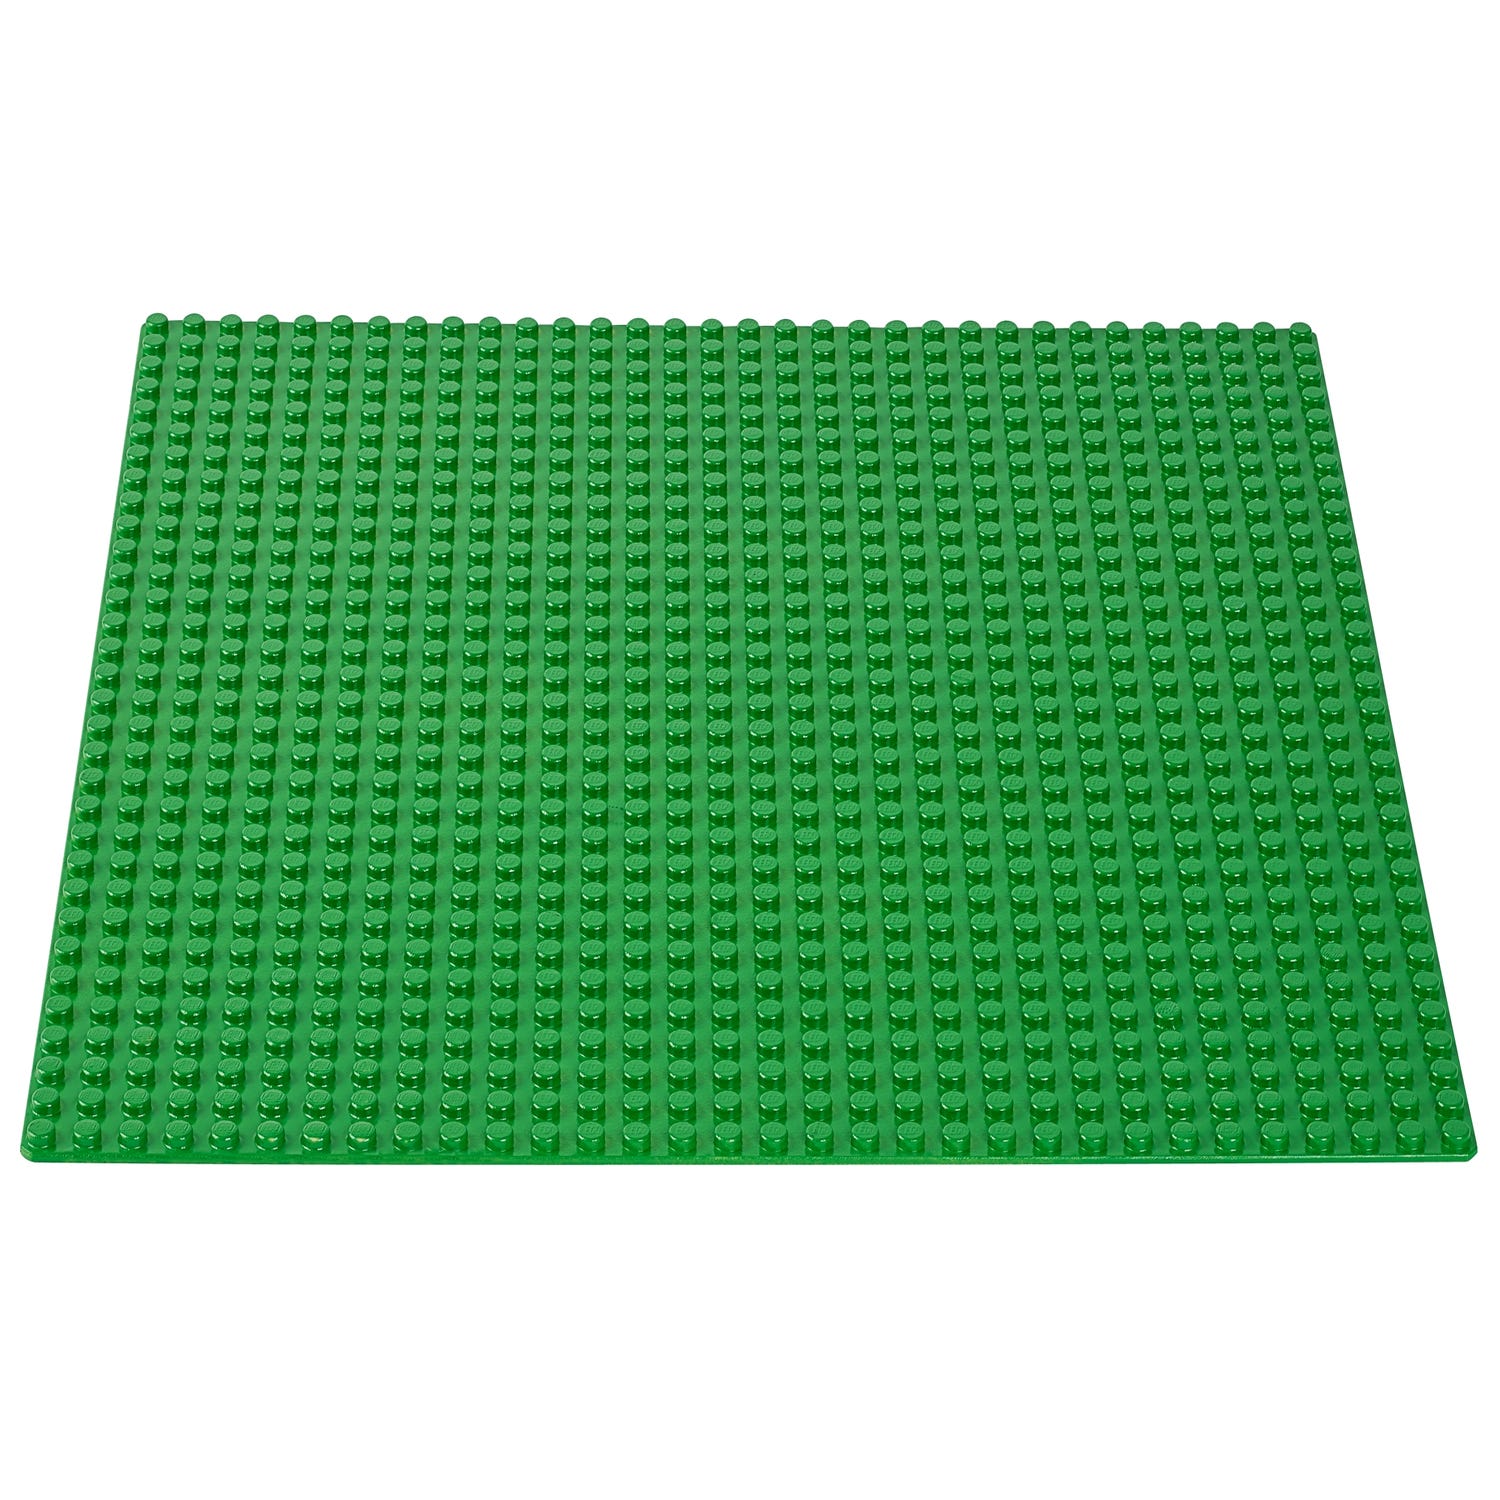 Lego - Construction - Plaque de Base Verte (25 x 25 cm)